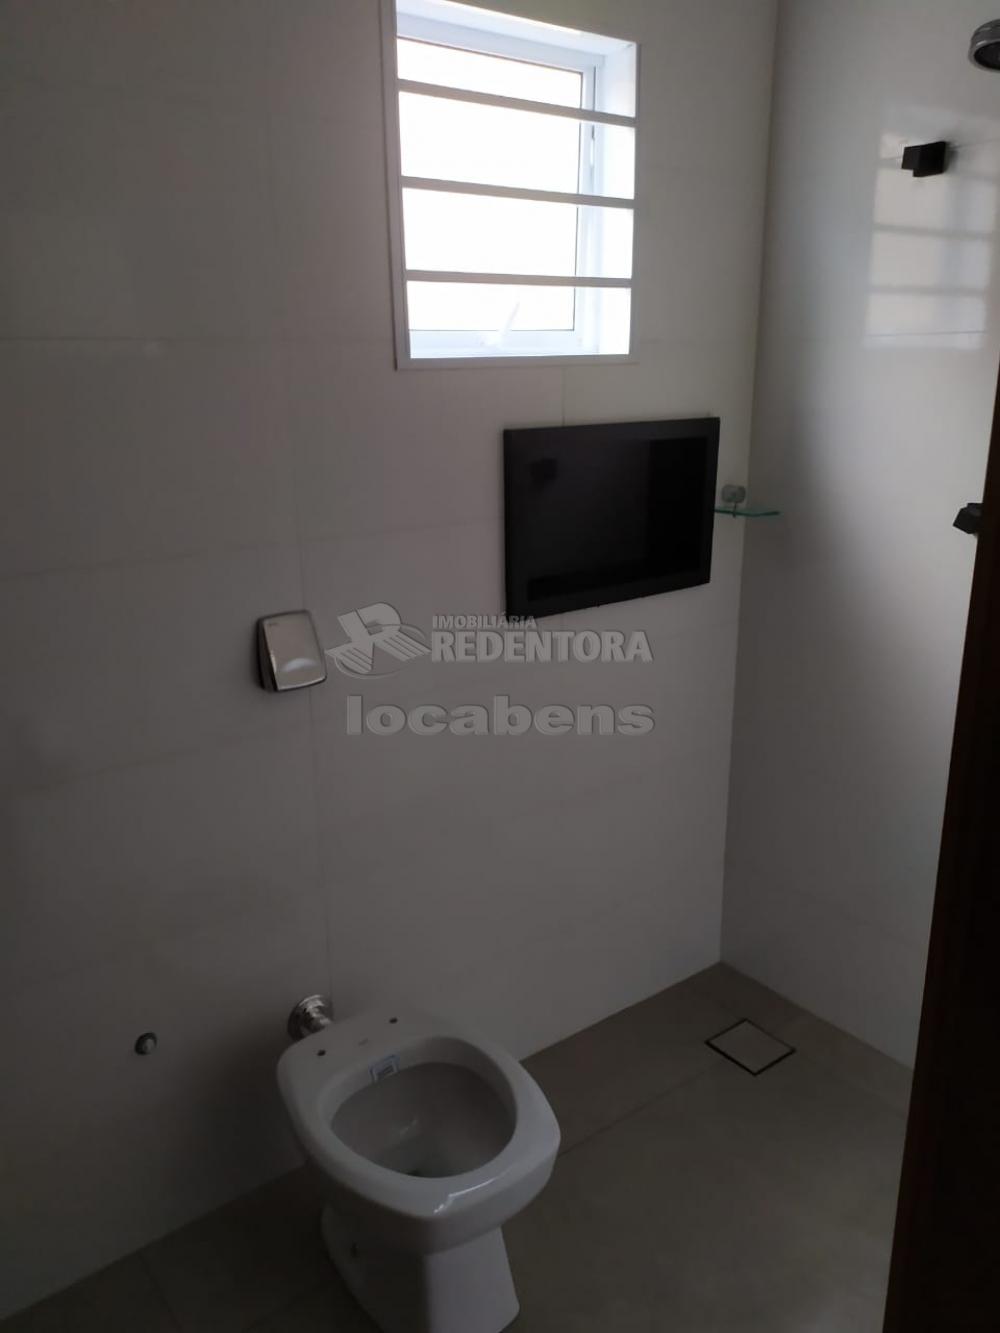 Comprar Casa / Padrão em São José do Rio Preto R$ 430.000,00 - Foto 11